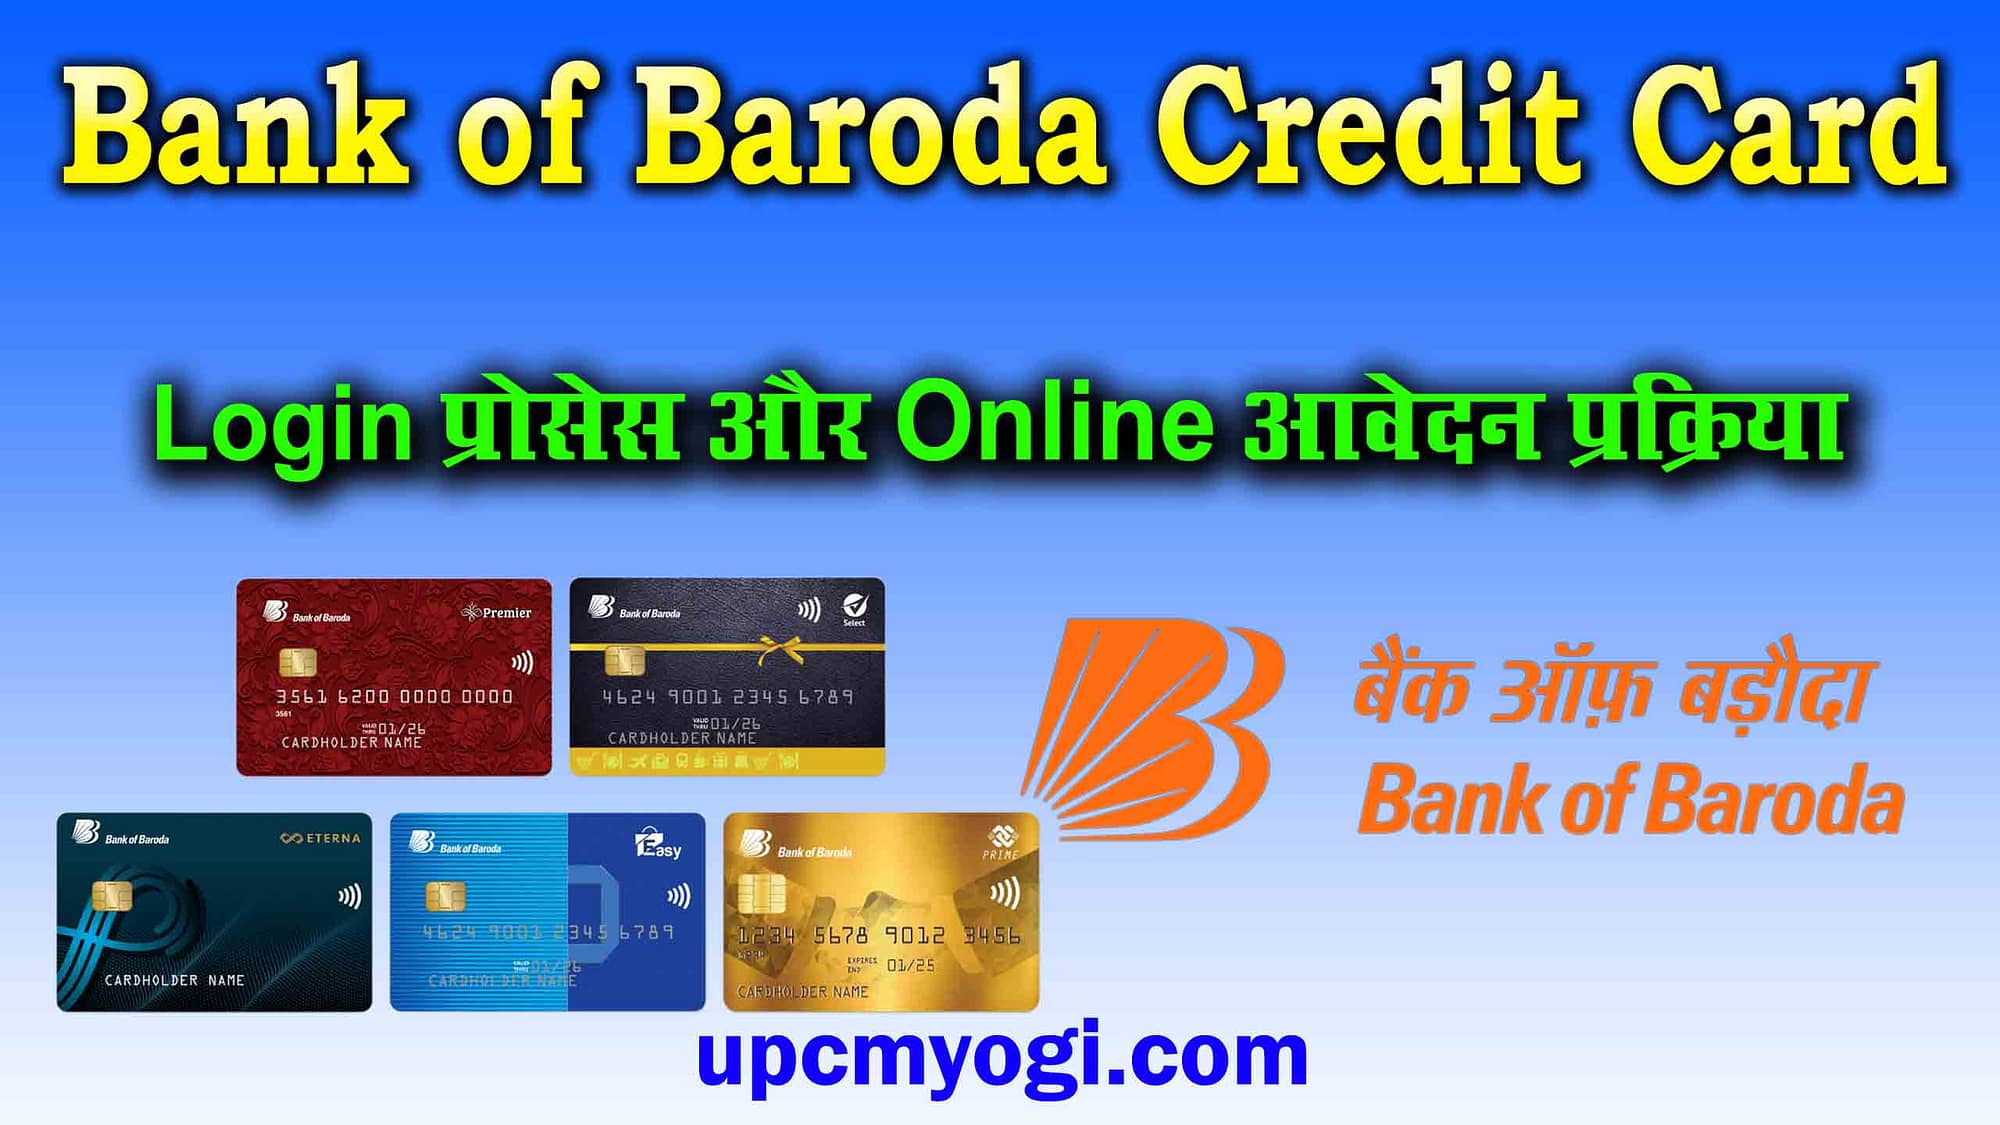 Bank of Baroda Credit Card login प्रोसेस और ऑनलाइन आवेदन कैसे करें